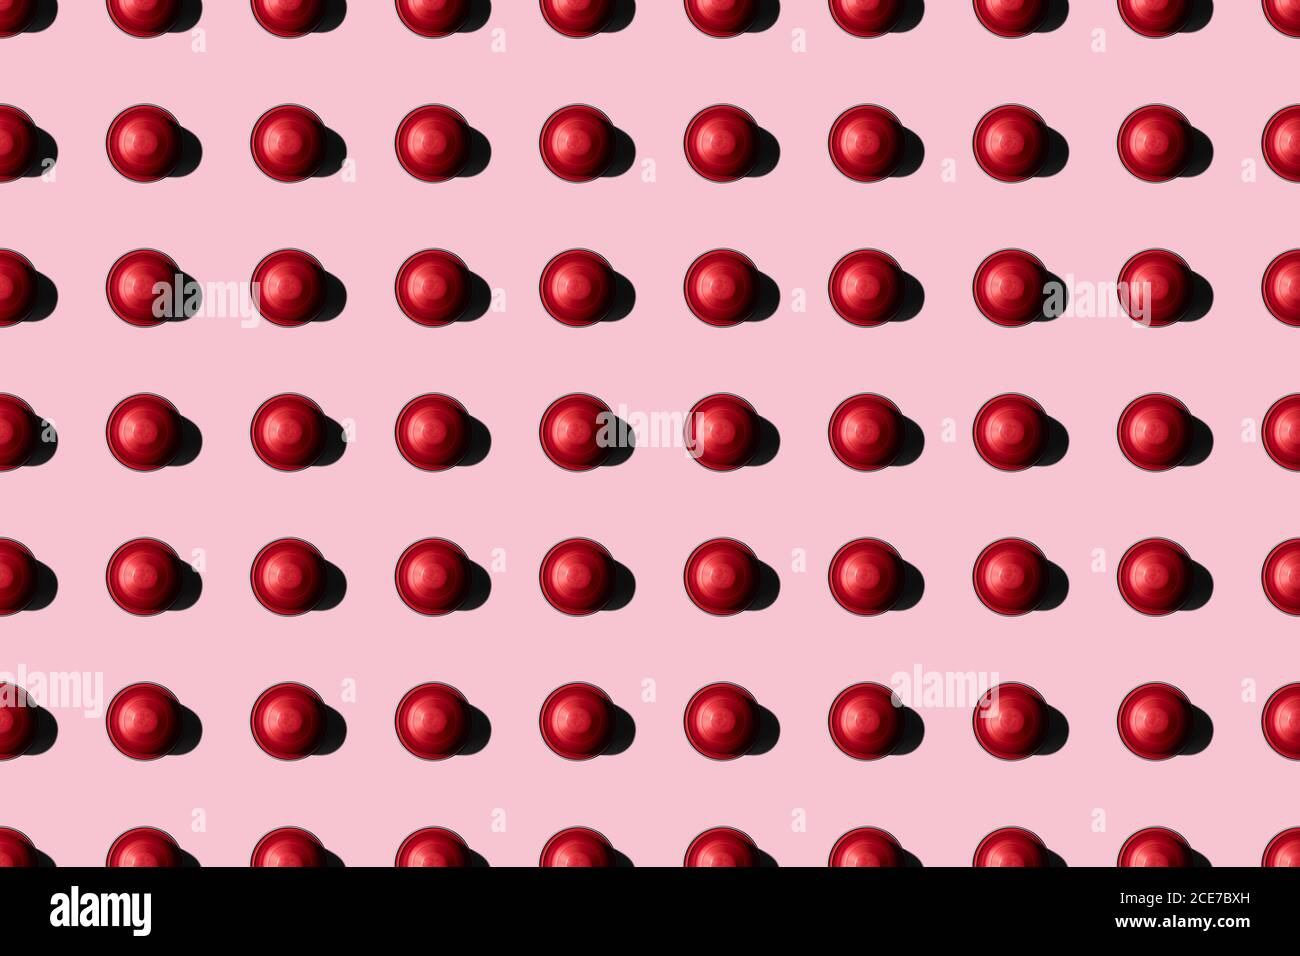 Draufsicht auf rote Kaffeepads in geraden Reihen Als Nahtloses Muster auf rosa Hintergrund Stockfoto